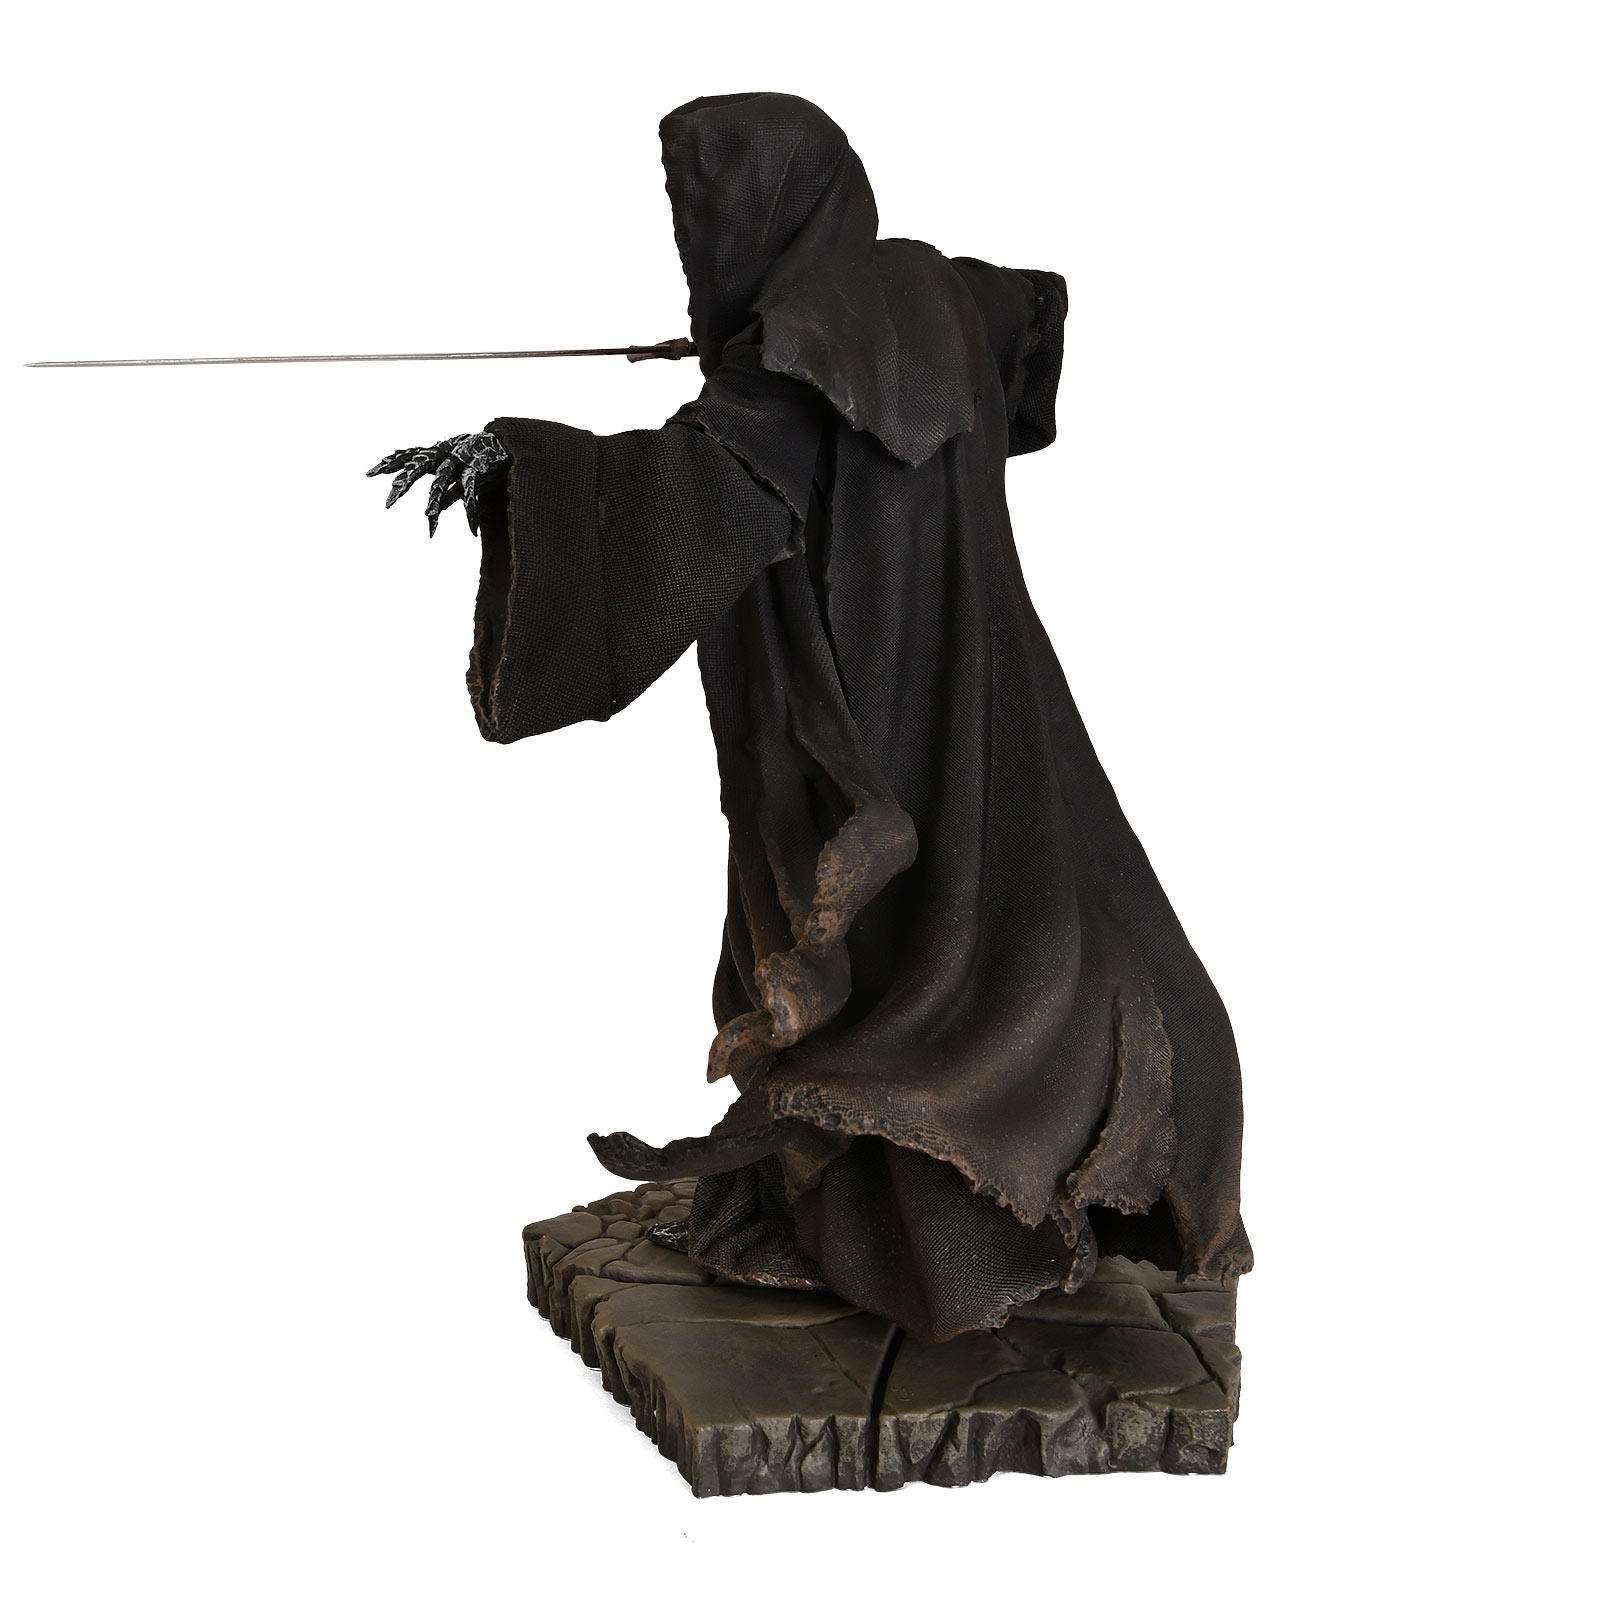 Le Seigneur des Anneaux - Statue Deluxe BDS Art Scale Nazgul Attaquant 22 cm